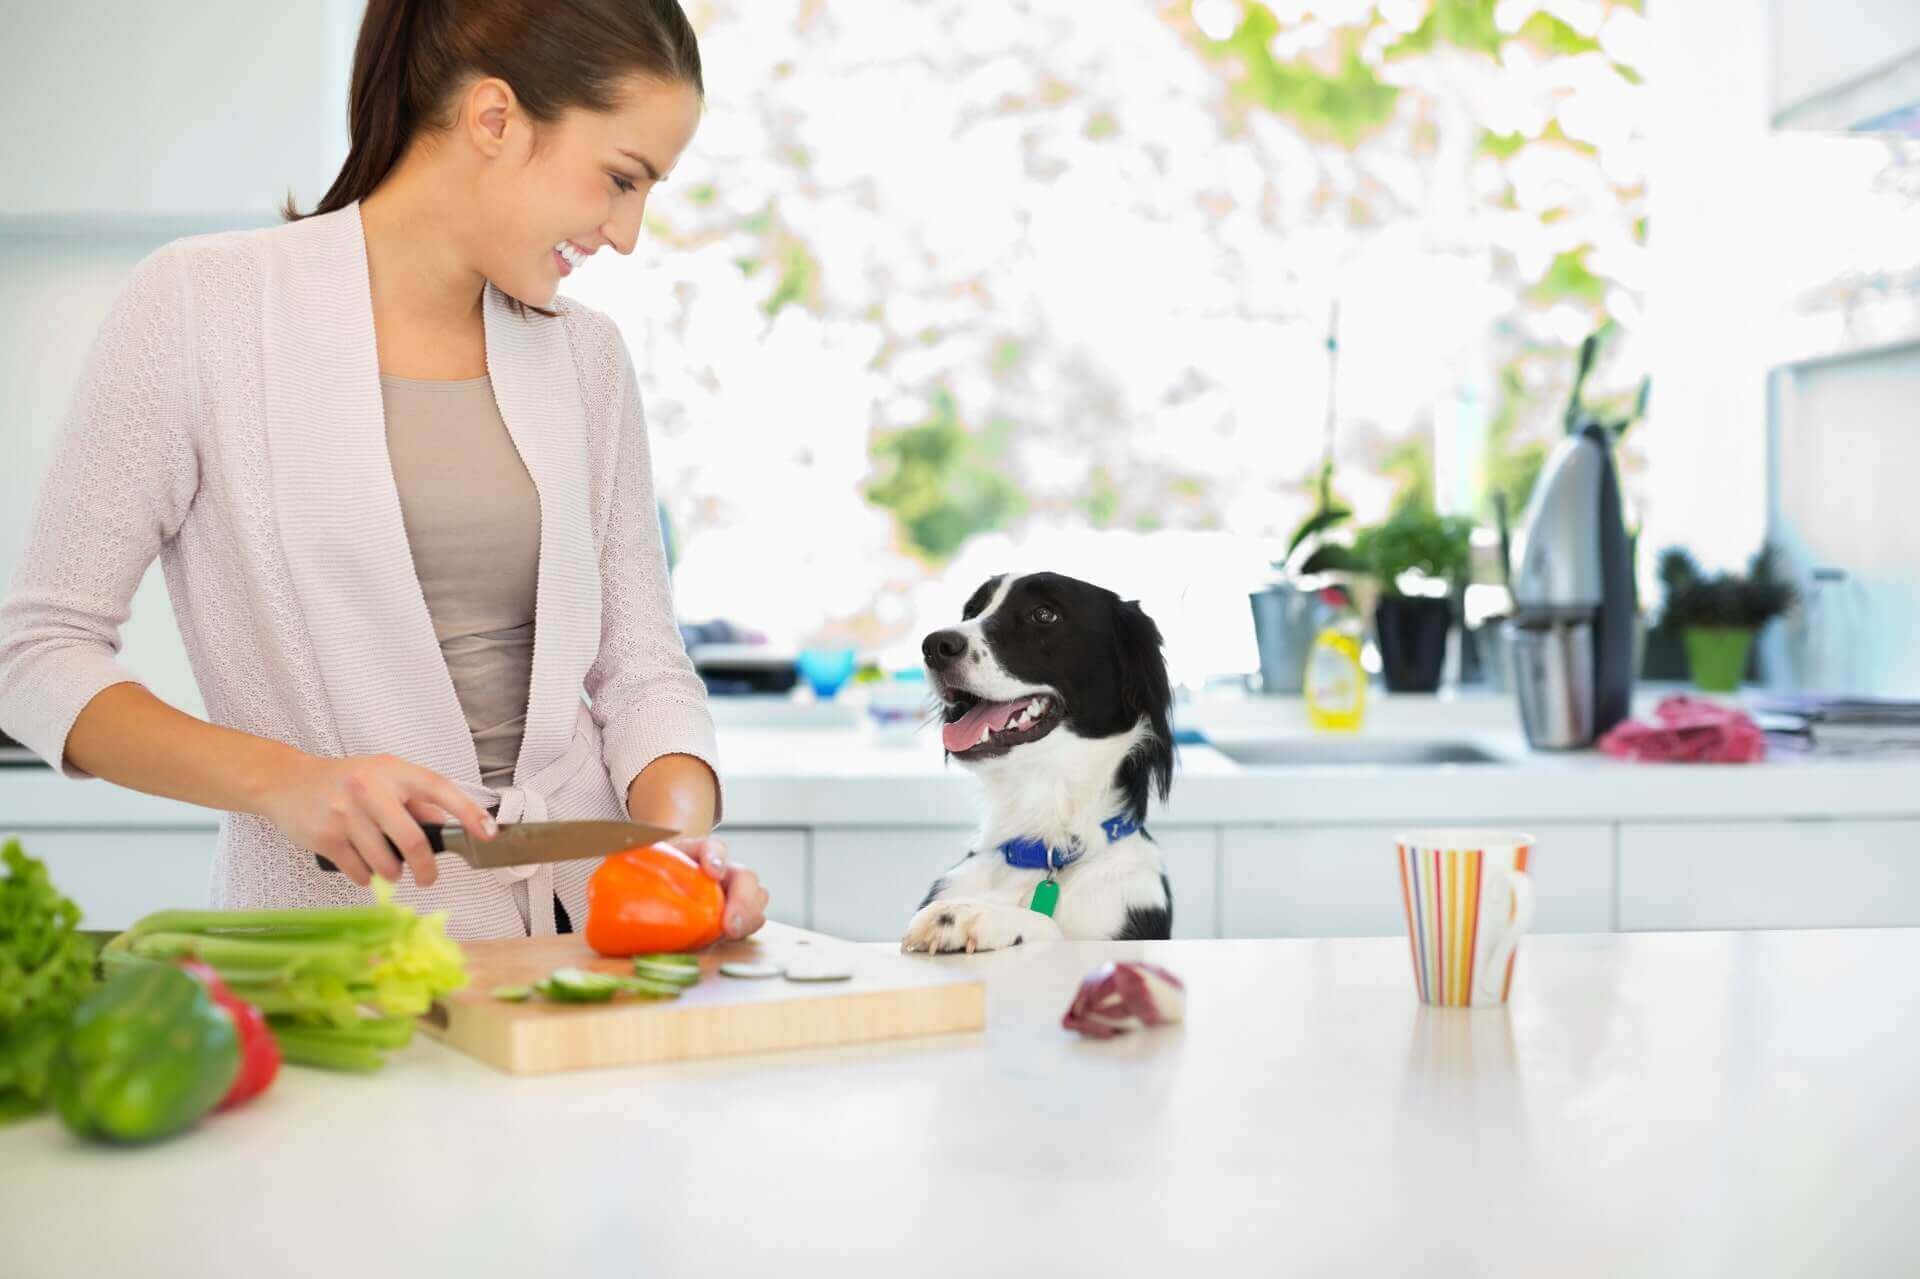 jeune femme coupant du céleri et d'autres légumes sur une planche à la cuisine avec un chien qui la regarde